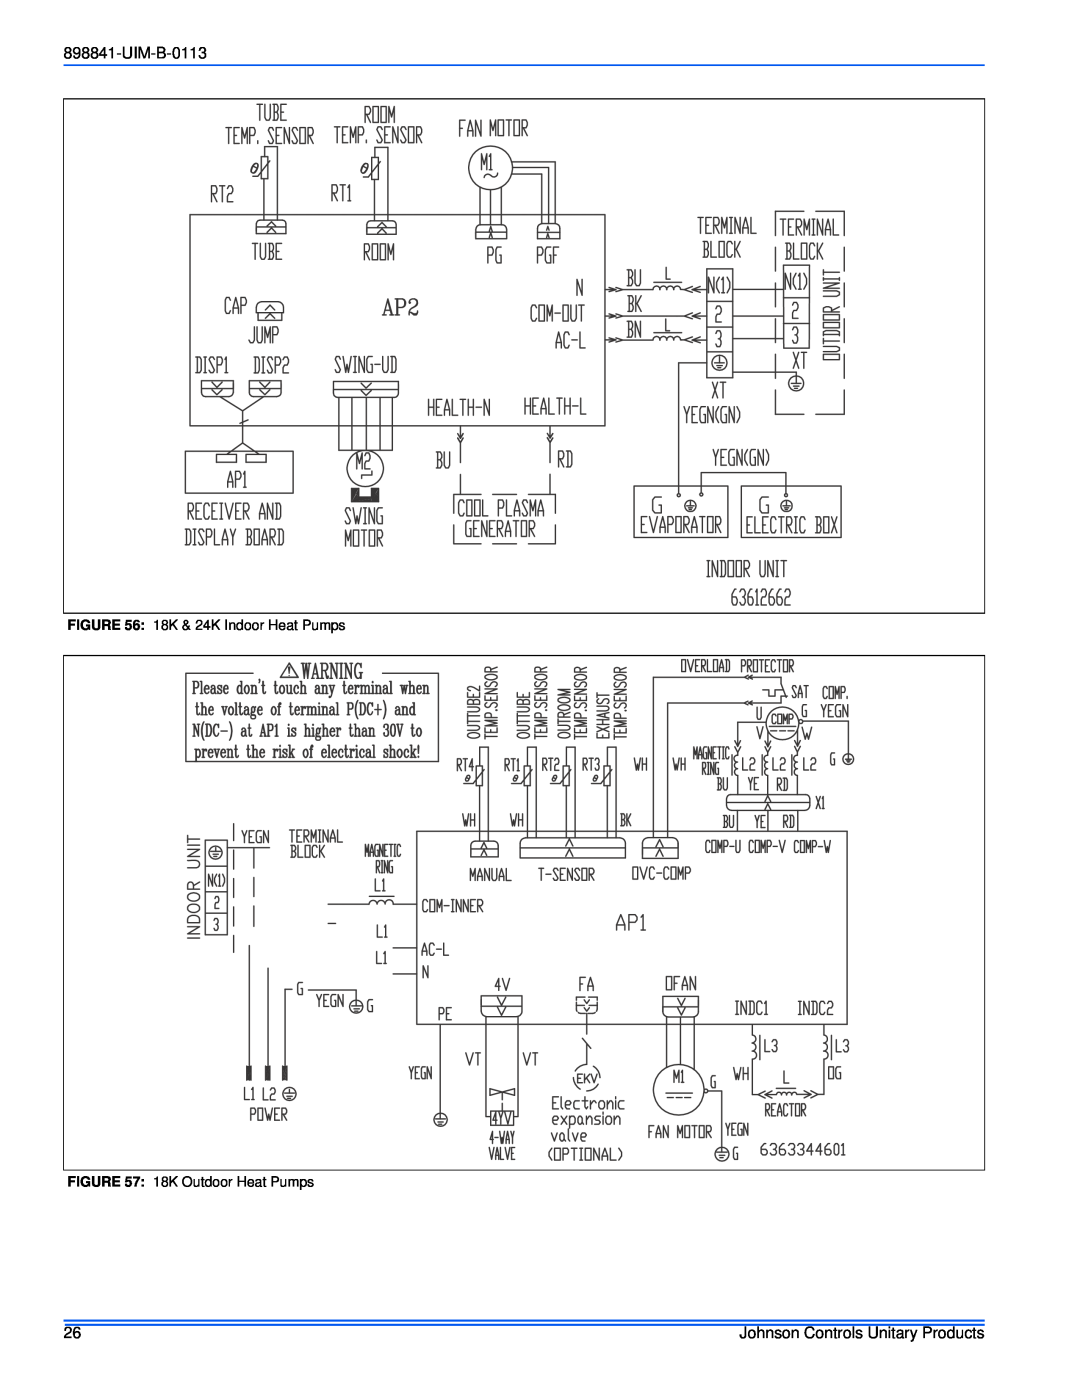 Johnson Controls 22 SEER installation manual UIM-B-0113, 18K & 24K Indoor Heat Pumps, 18K Outdoor Heat Pumps 